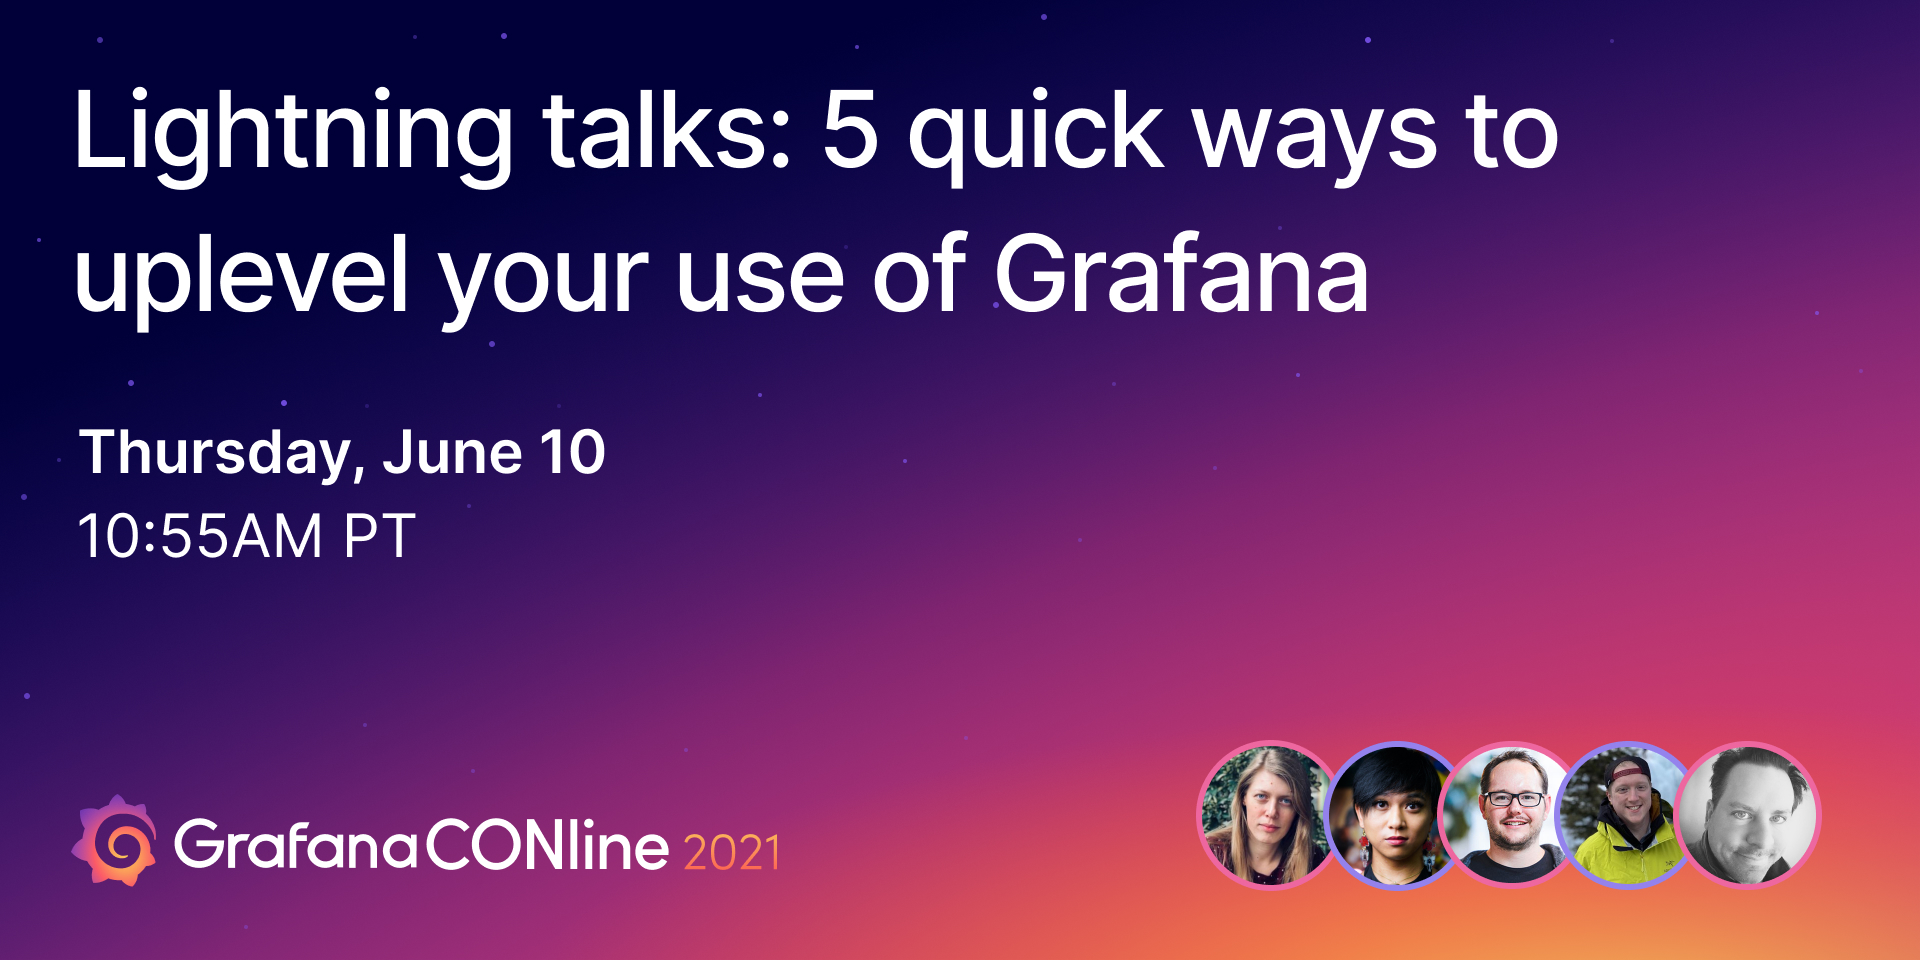 闪电谈话:5个快速提升你对Grafana的使用的方法